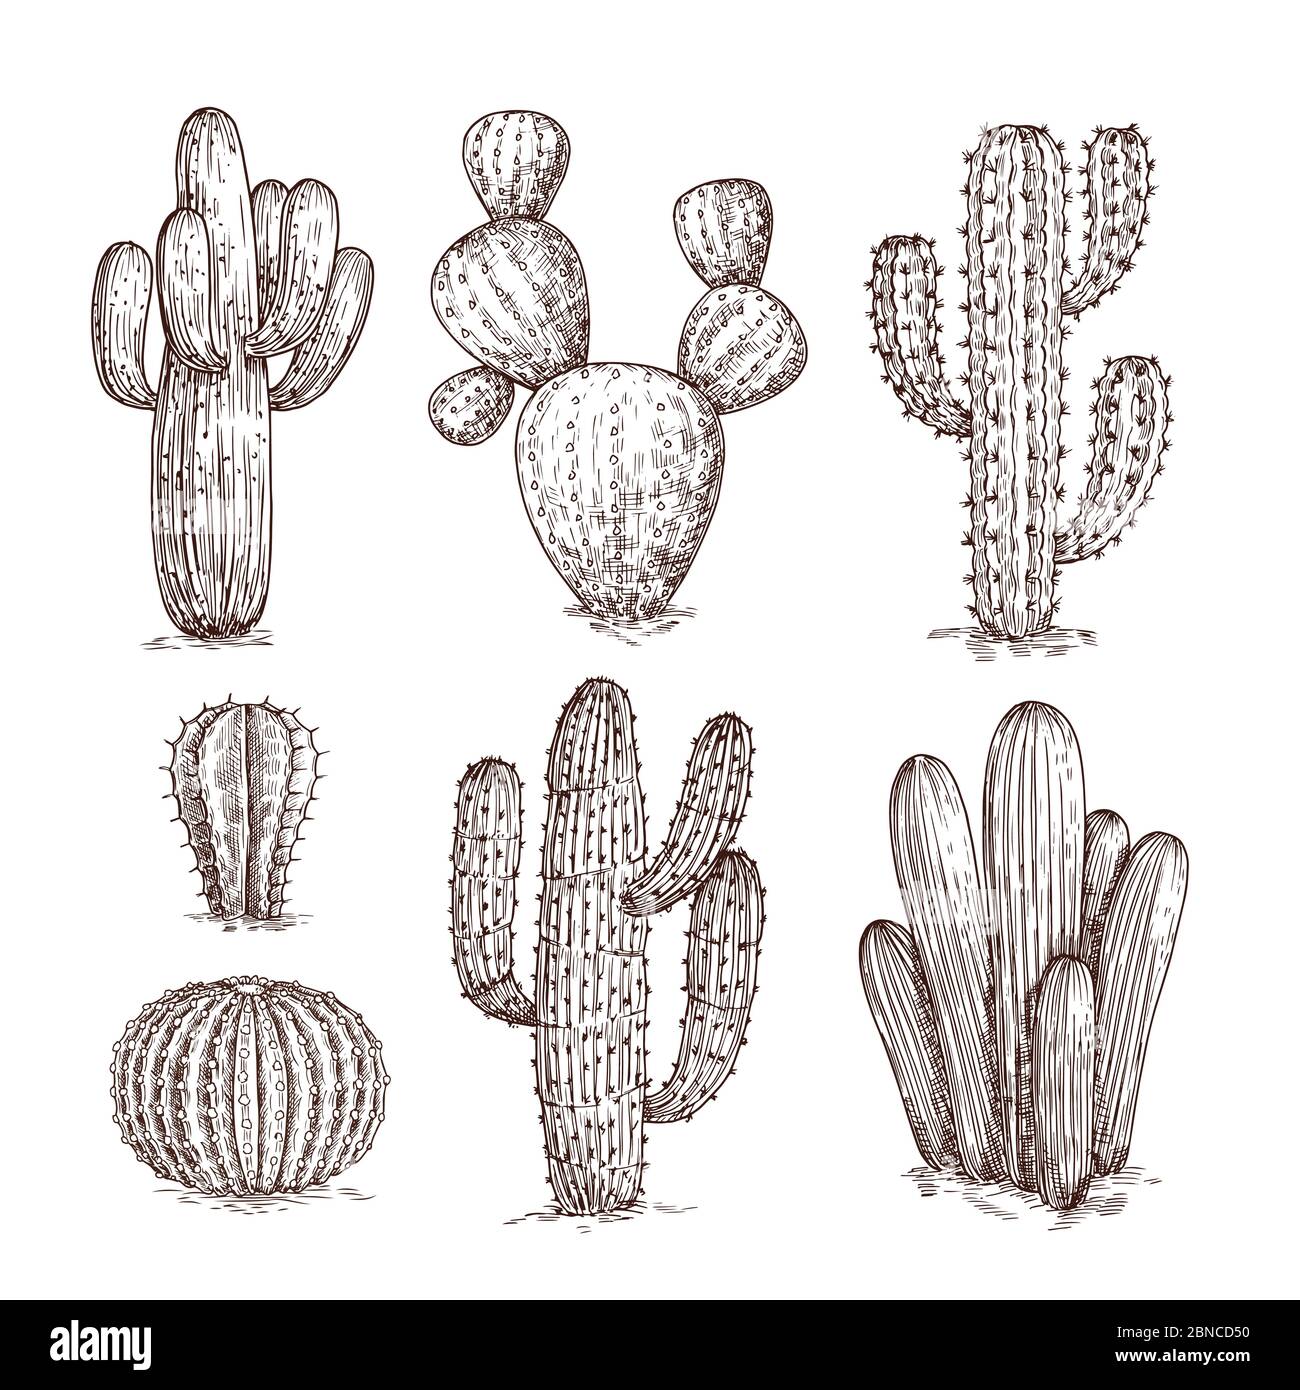 Cactus disegnato a mano. Western Desert cactus piante messicane in stile schizzo. Cactuses doodle insieme di vettori. Illustrazione del cactus selvaggio con spina Illustrazione Vettoriale